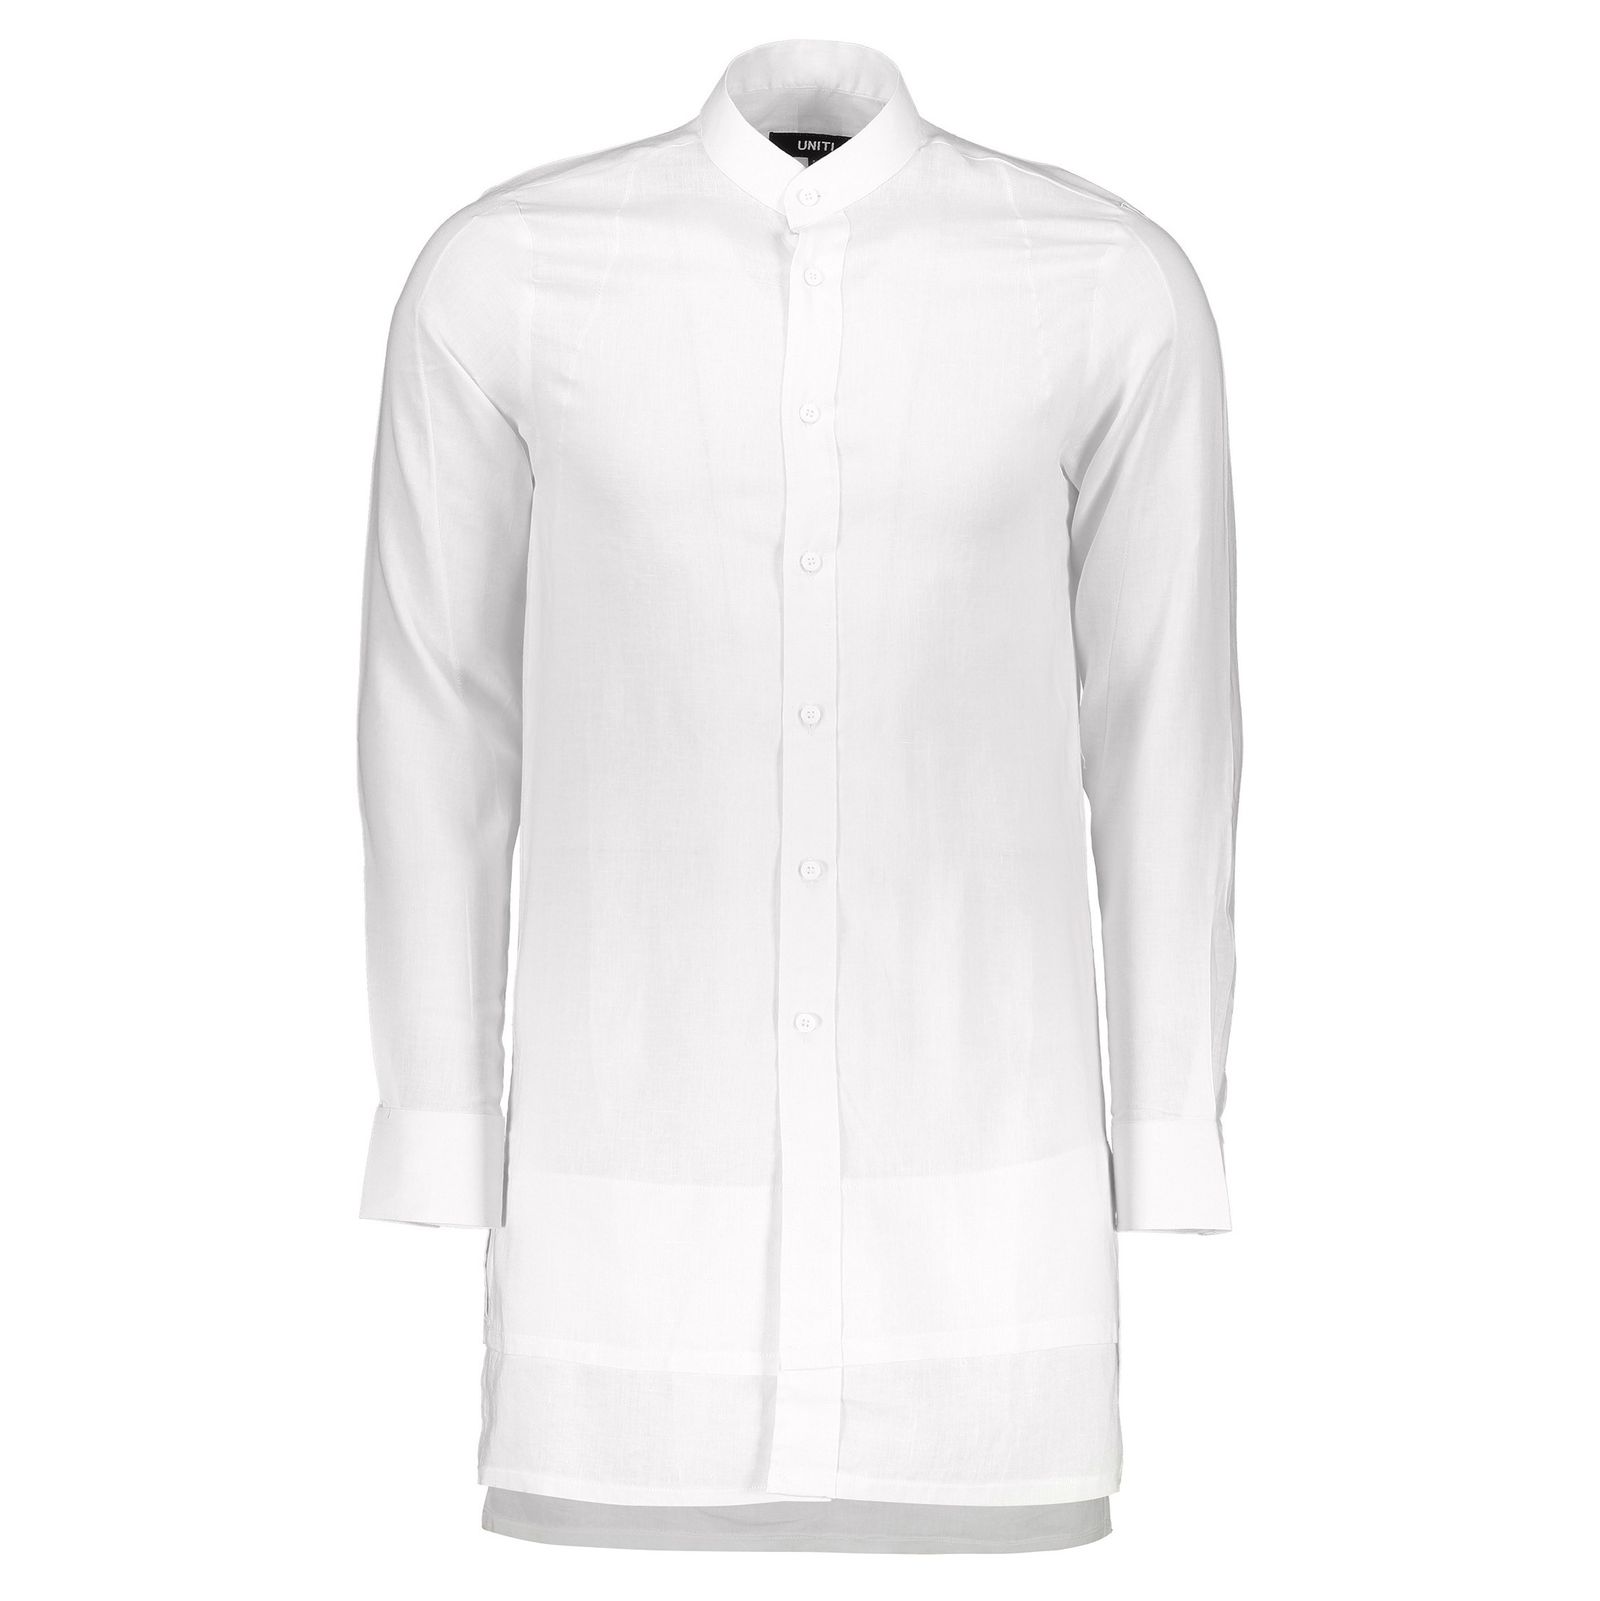 پیراهن آستین بلند مردانه Havana - یونیتی - سفيد - 1